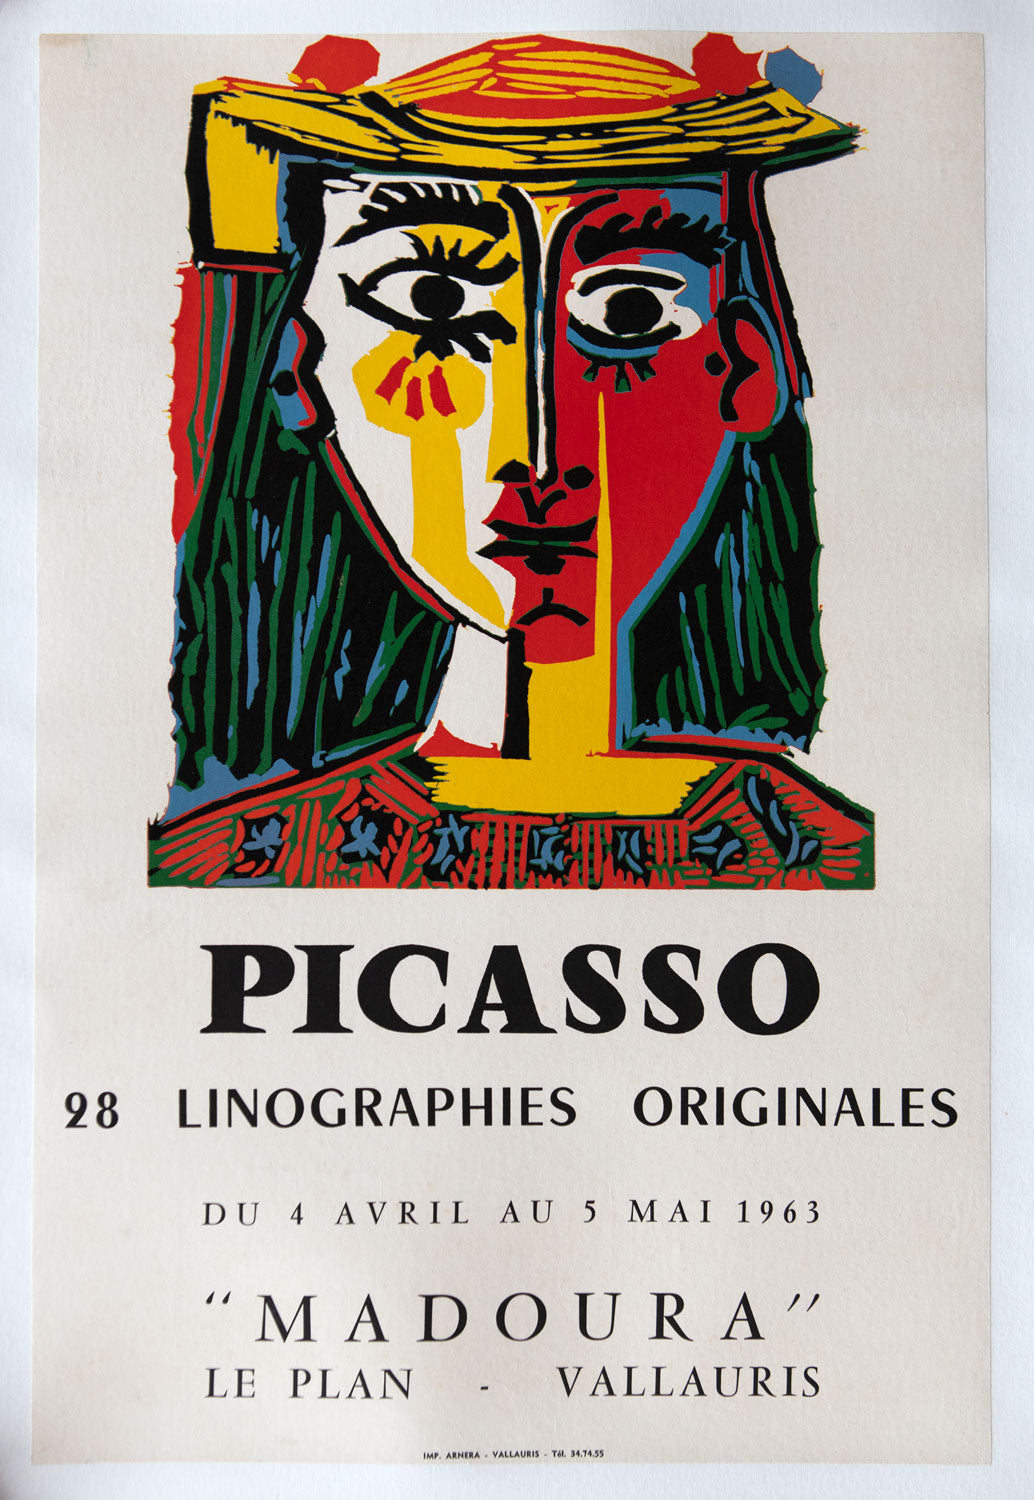 Picasso. 28 Linographies Originals. 'Madoura'